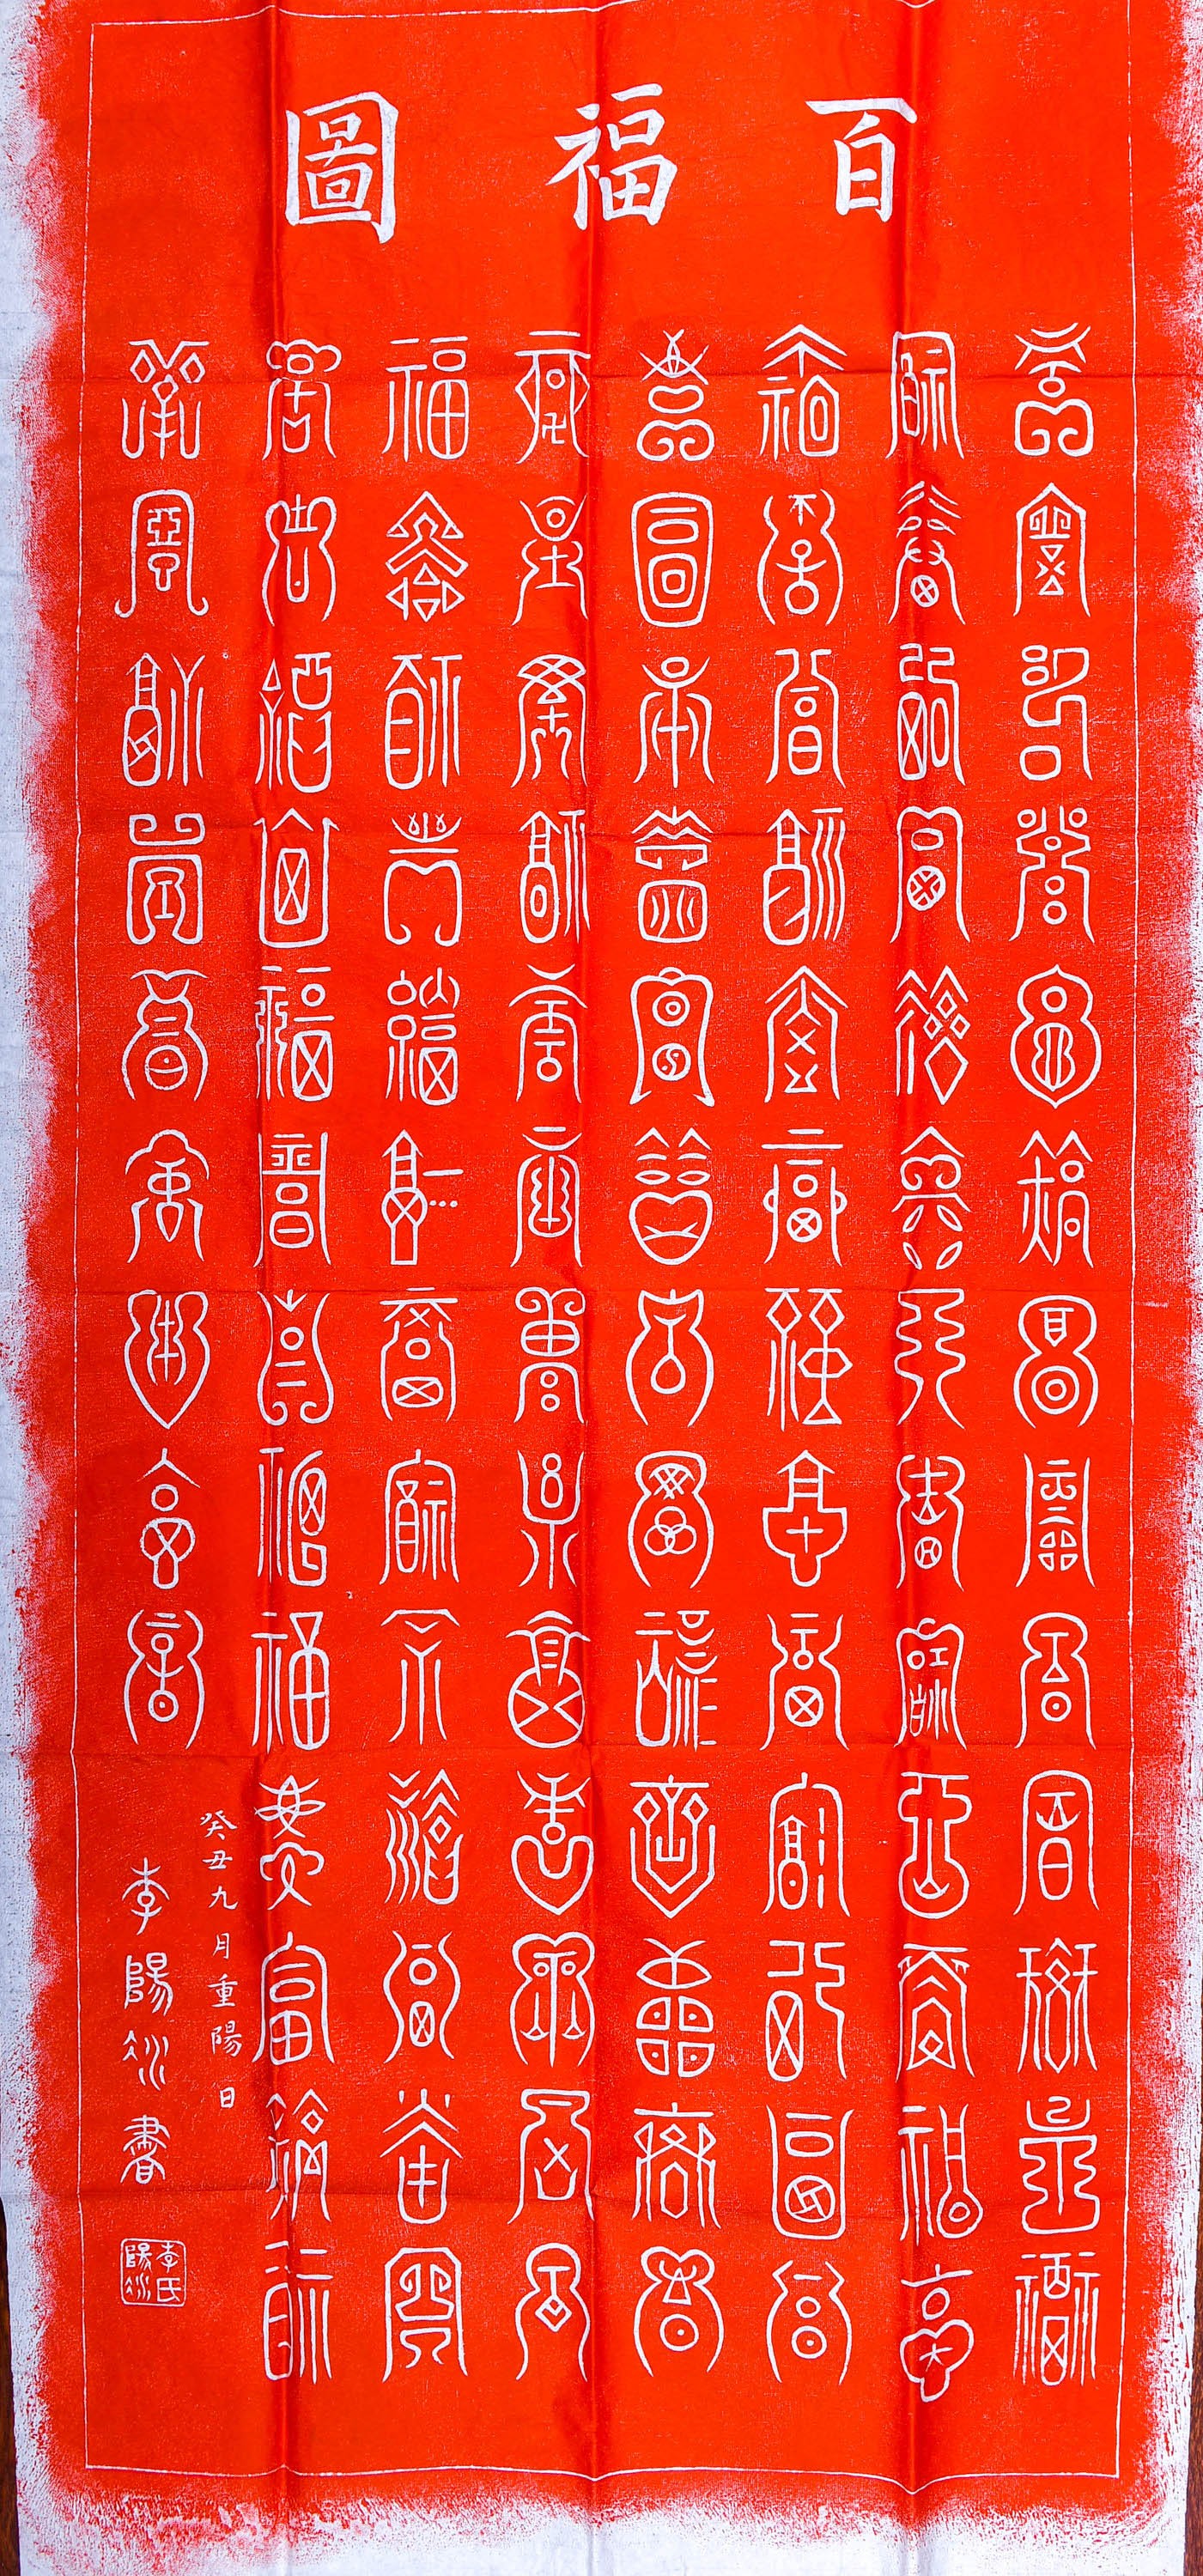 佚名|西安碑林博物馆《百福图》拓本|陕西中洲博艺拍卖有限公司